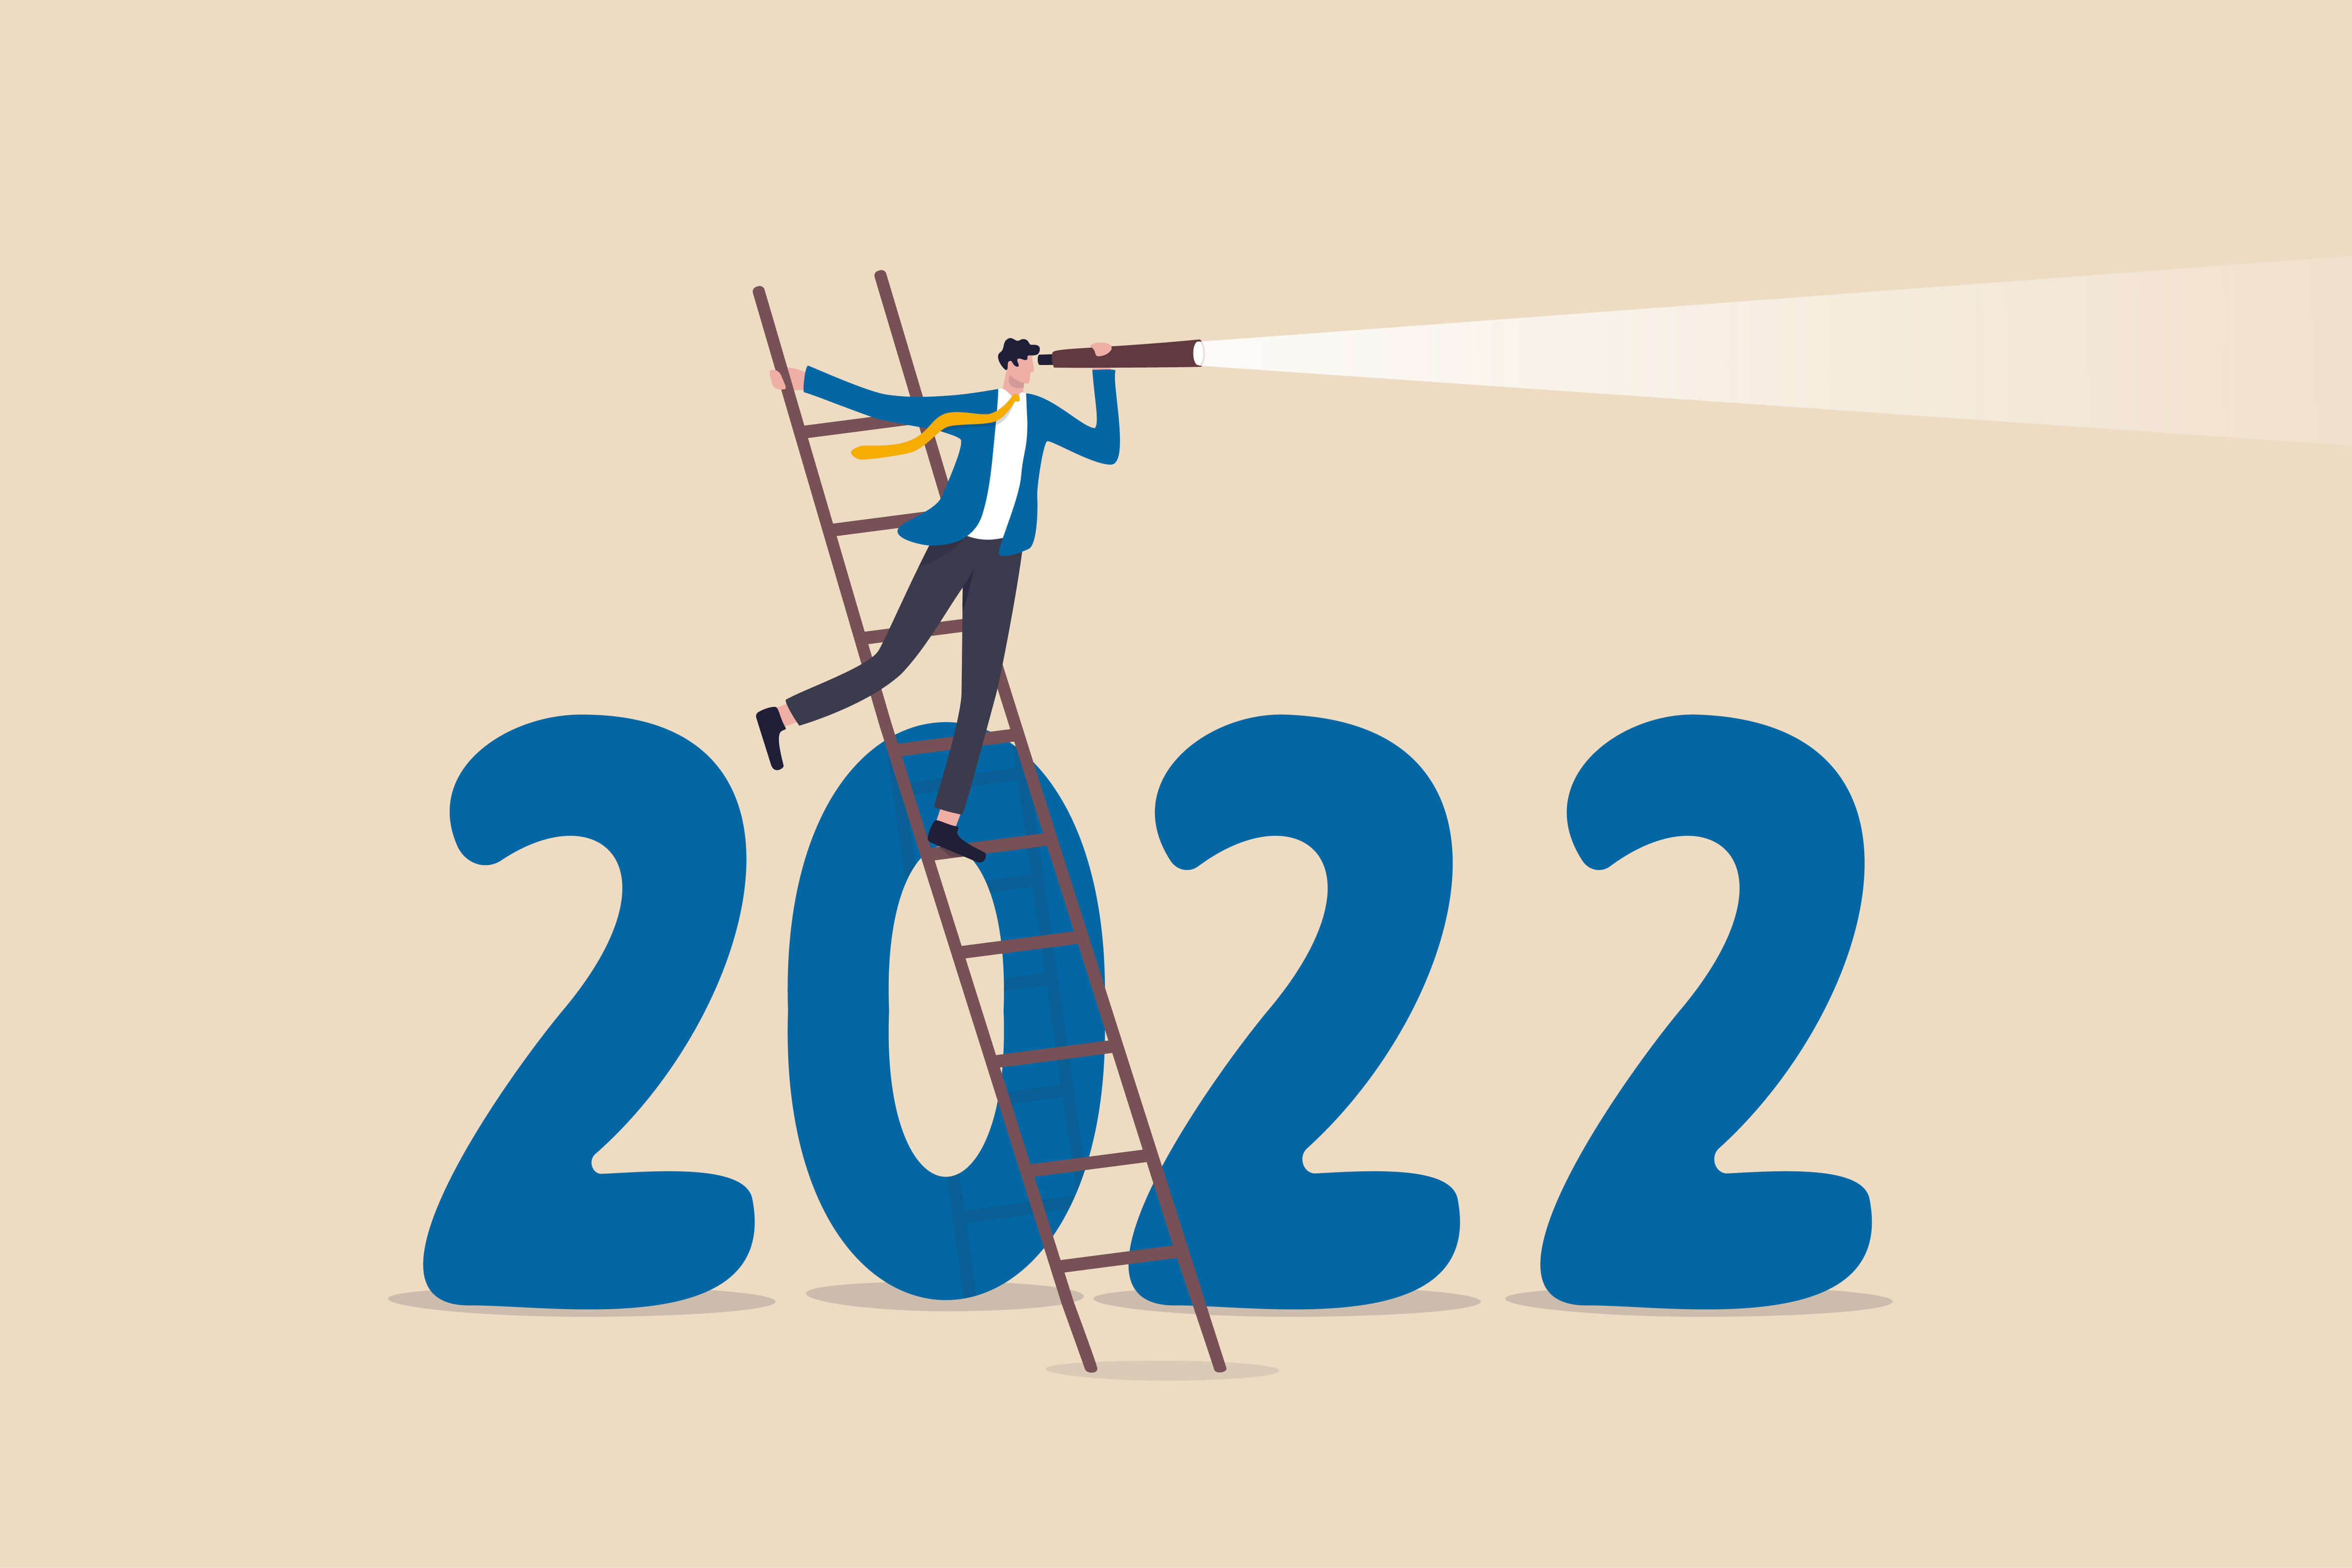 2022 Forecast